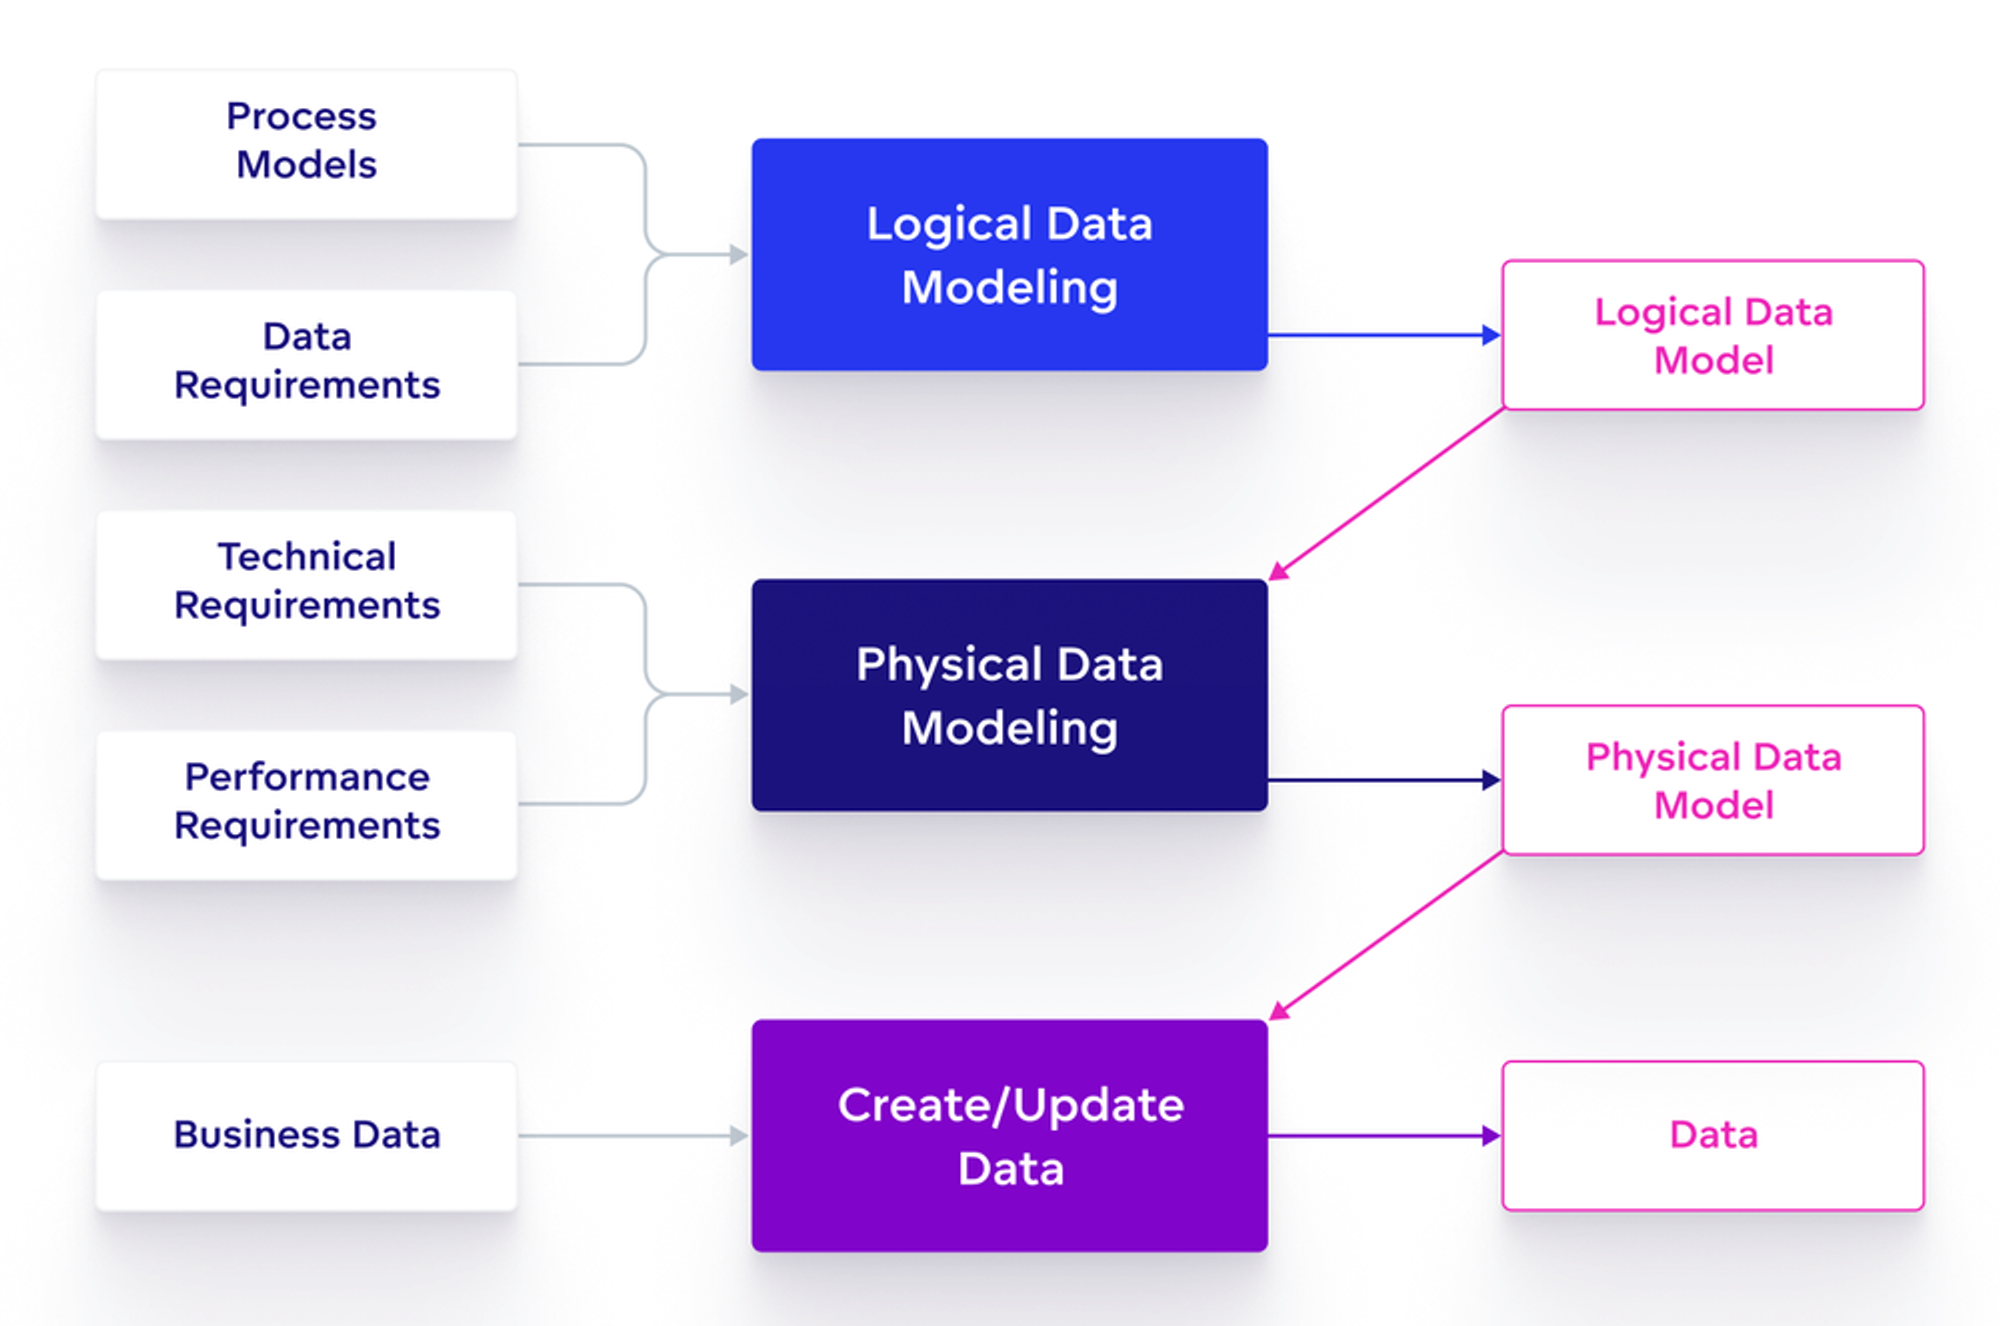 Steps in data model creation